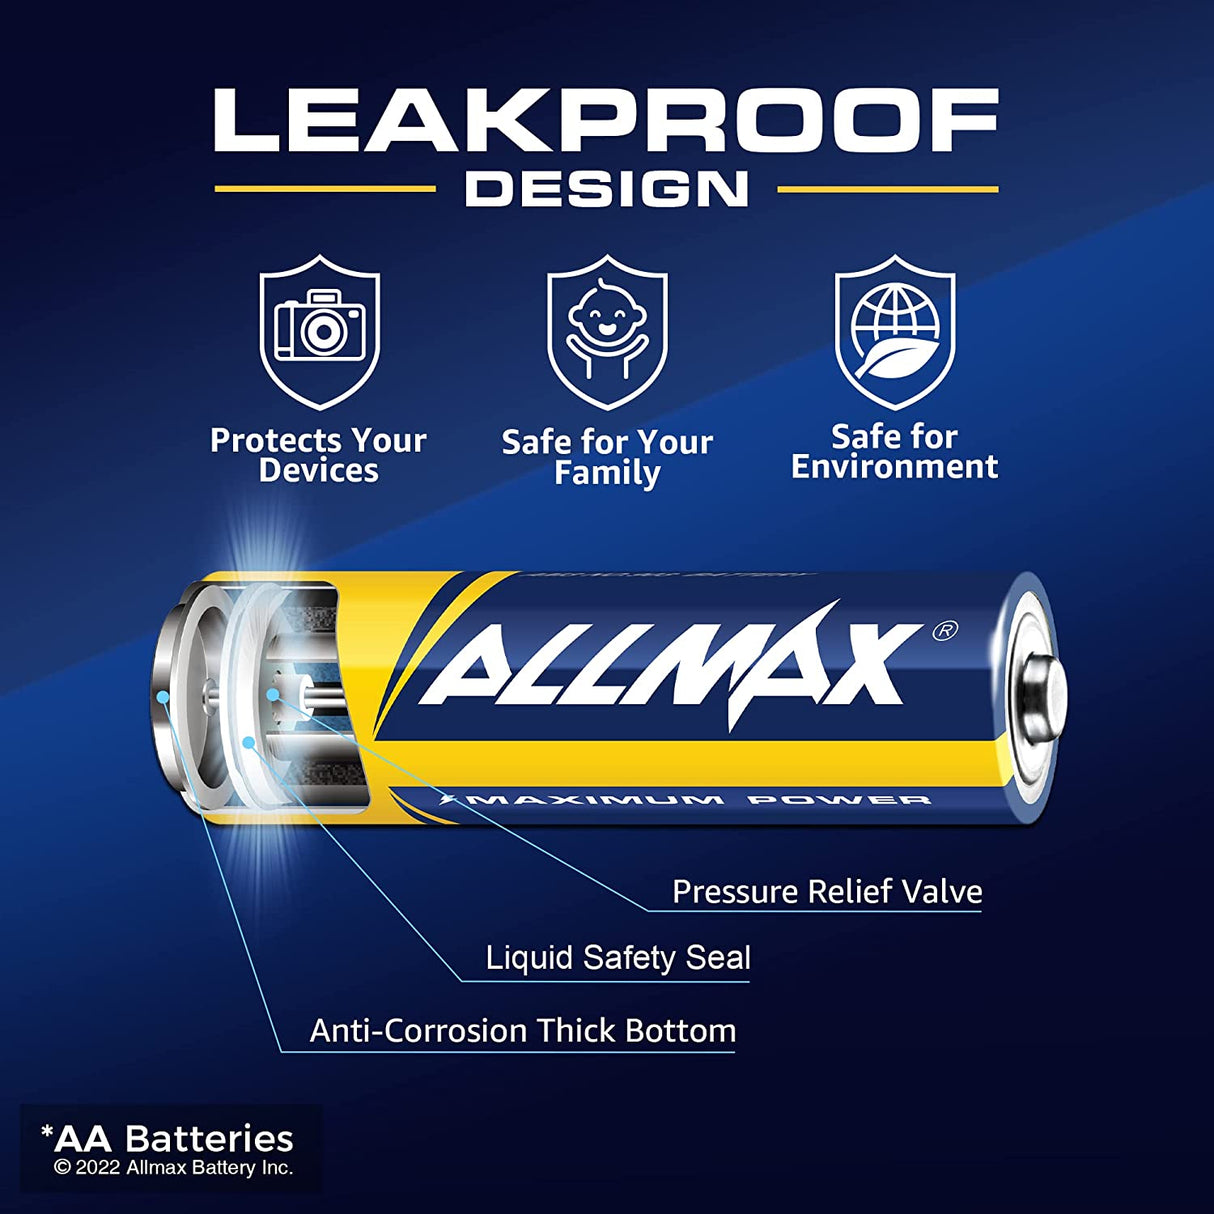 Baterías alcalinas de máxima potencia Allmax AA (paquete de 5)